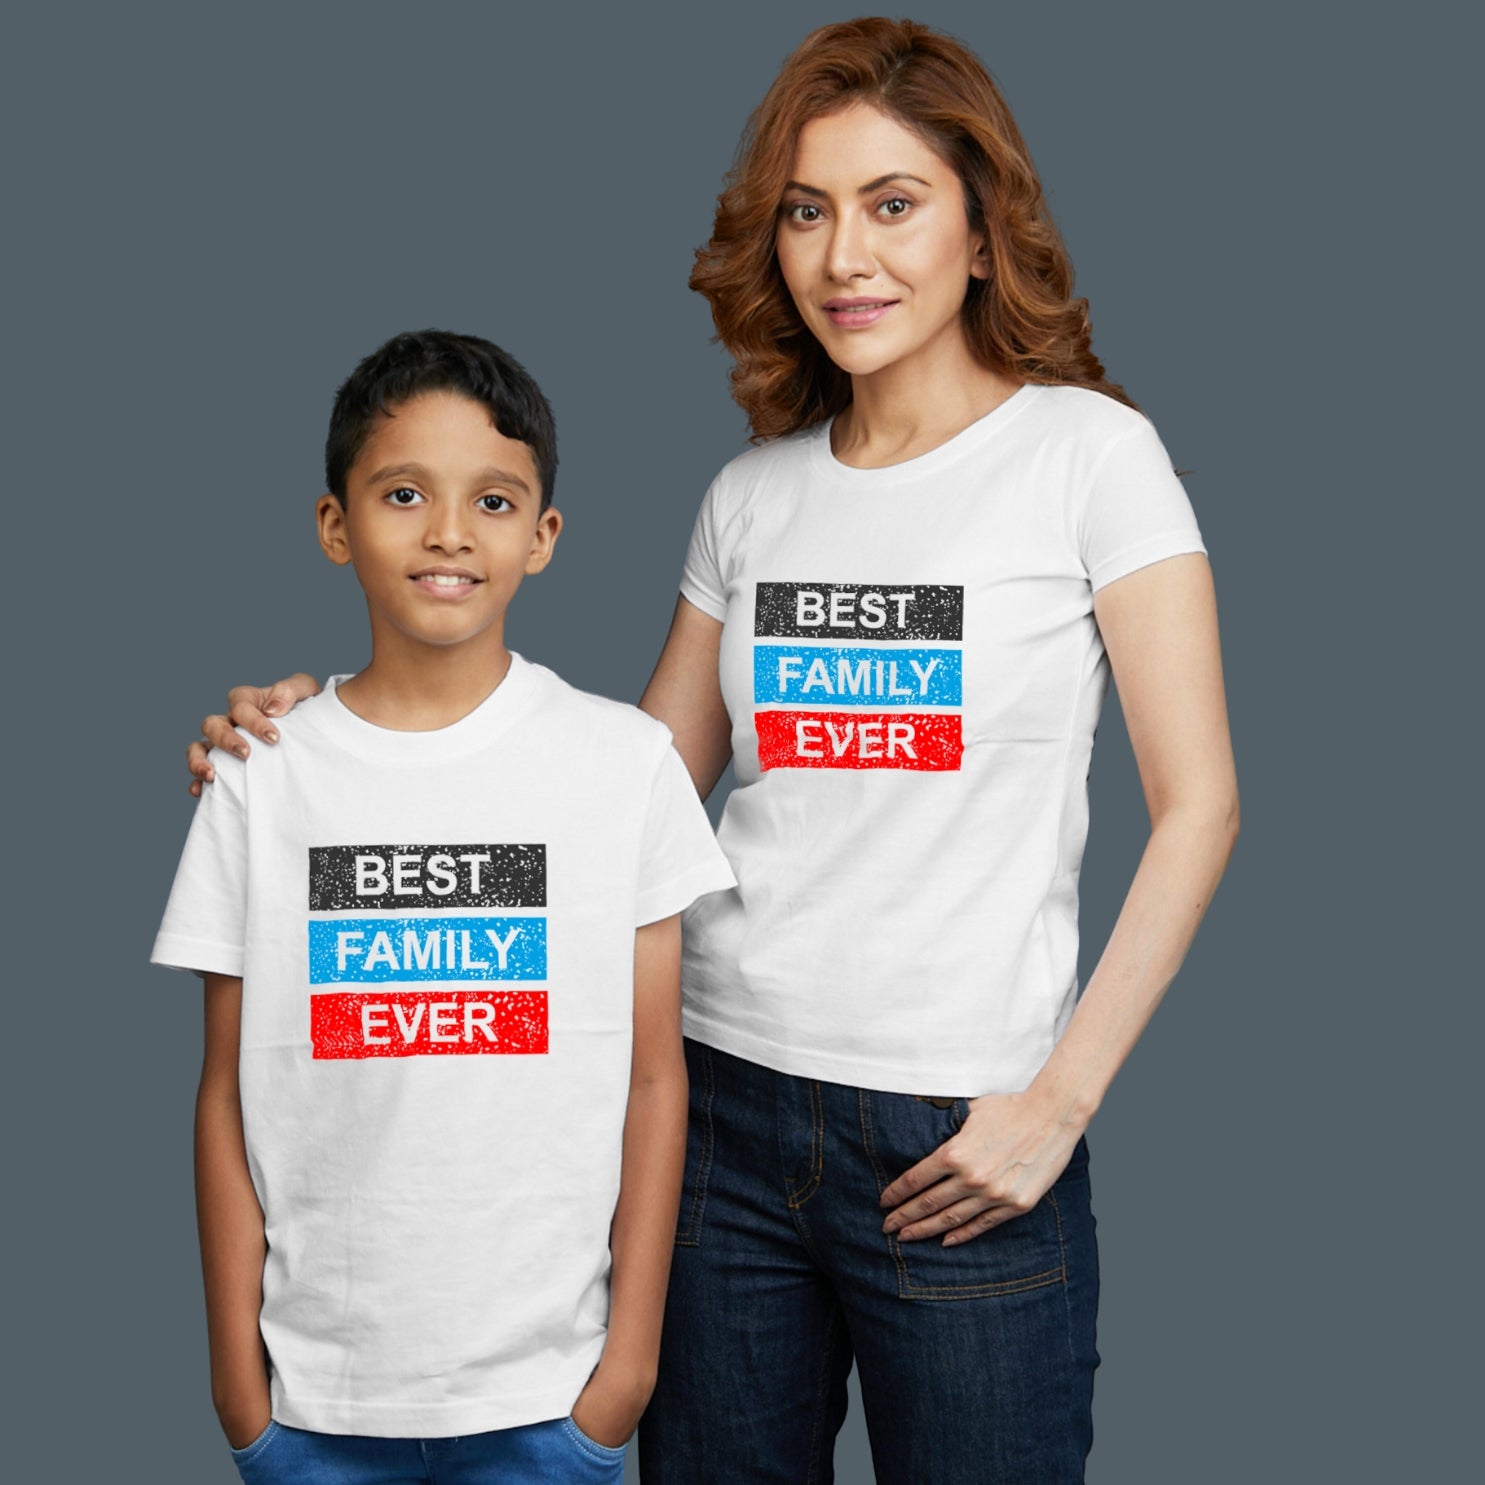 Family of 2 t shirt for Mom Son in White Colour- Best Family Ever Variant